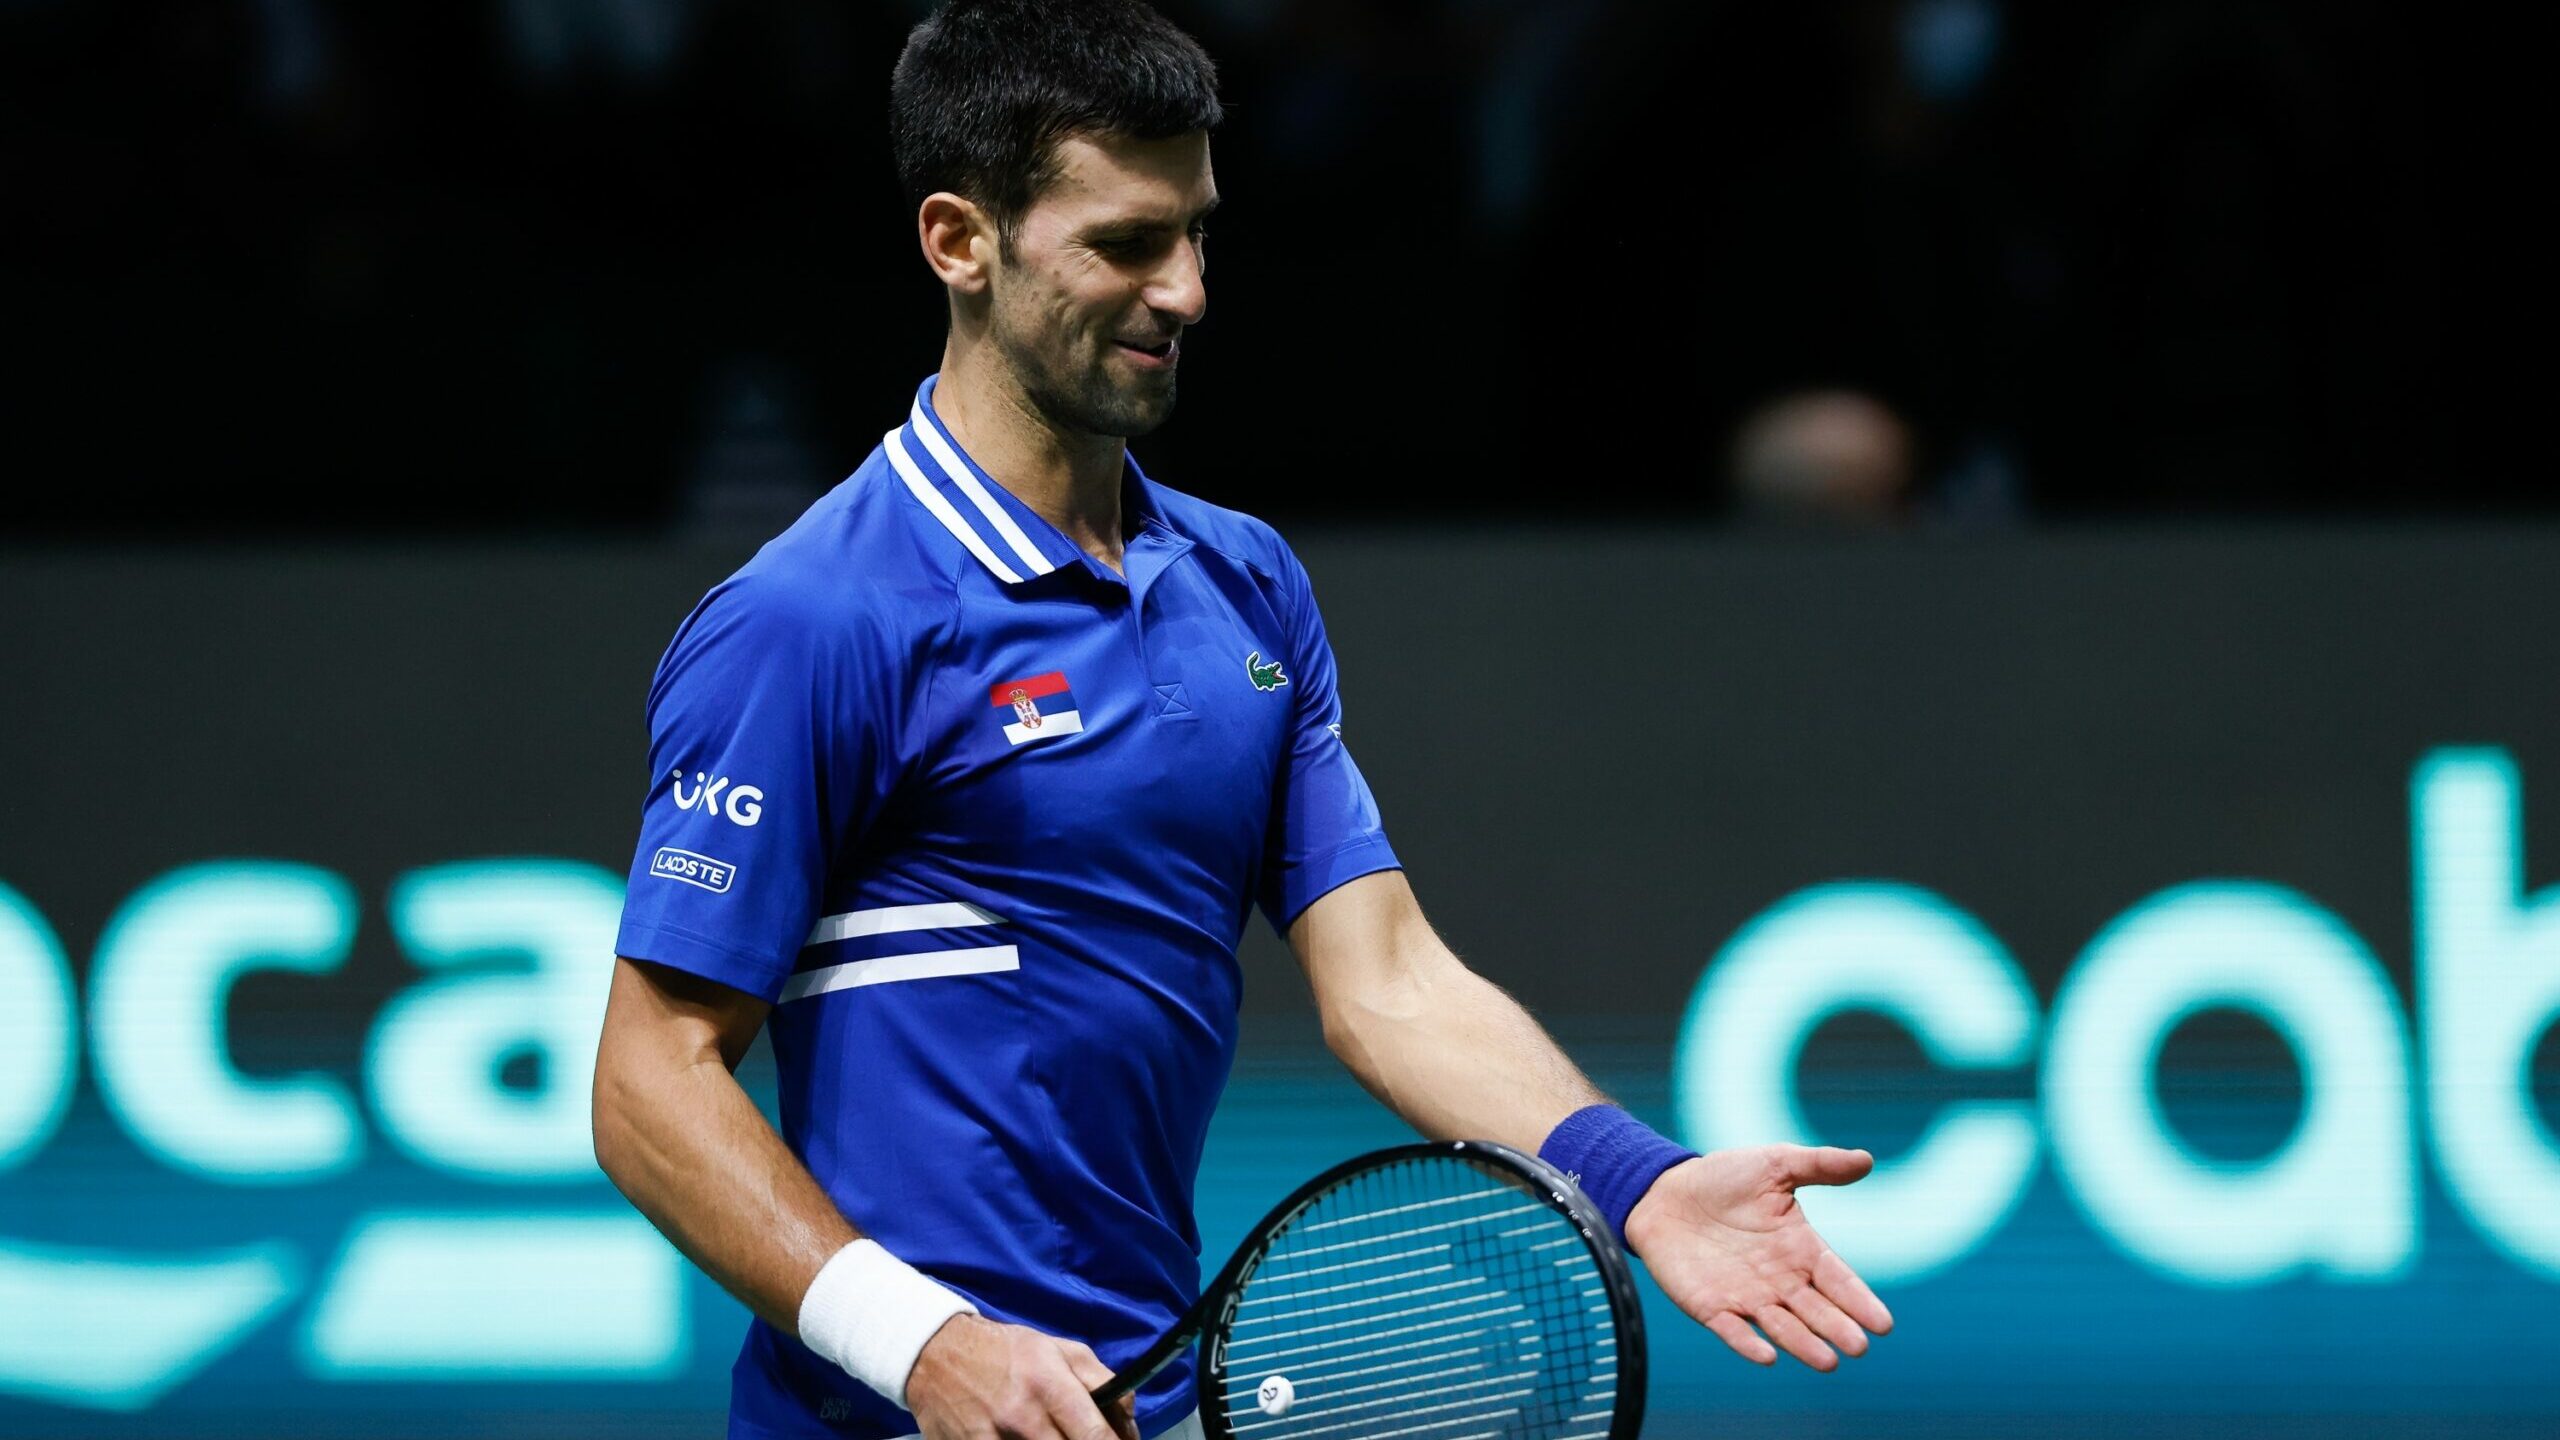 Djokovic podrá participar en Roland Garros aunque no esté vacunado